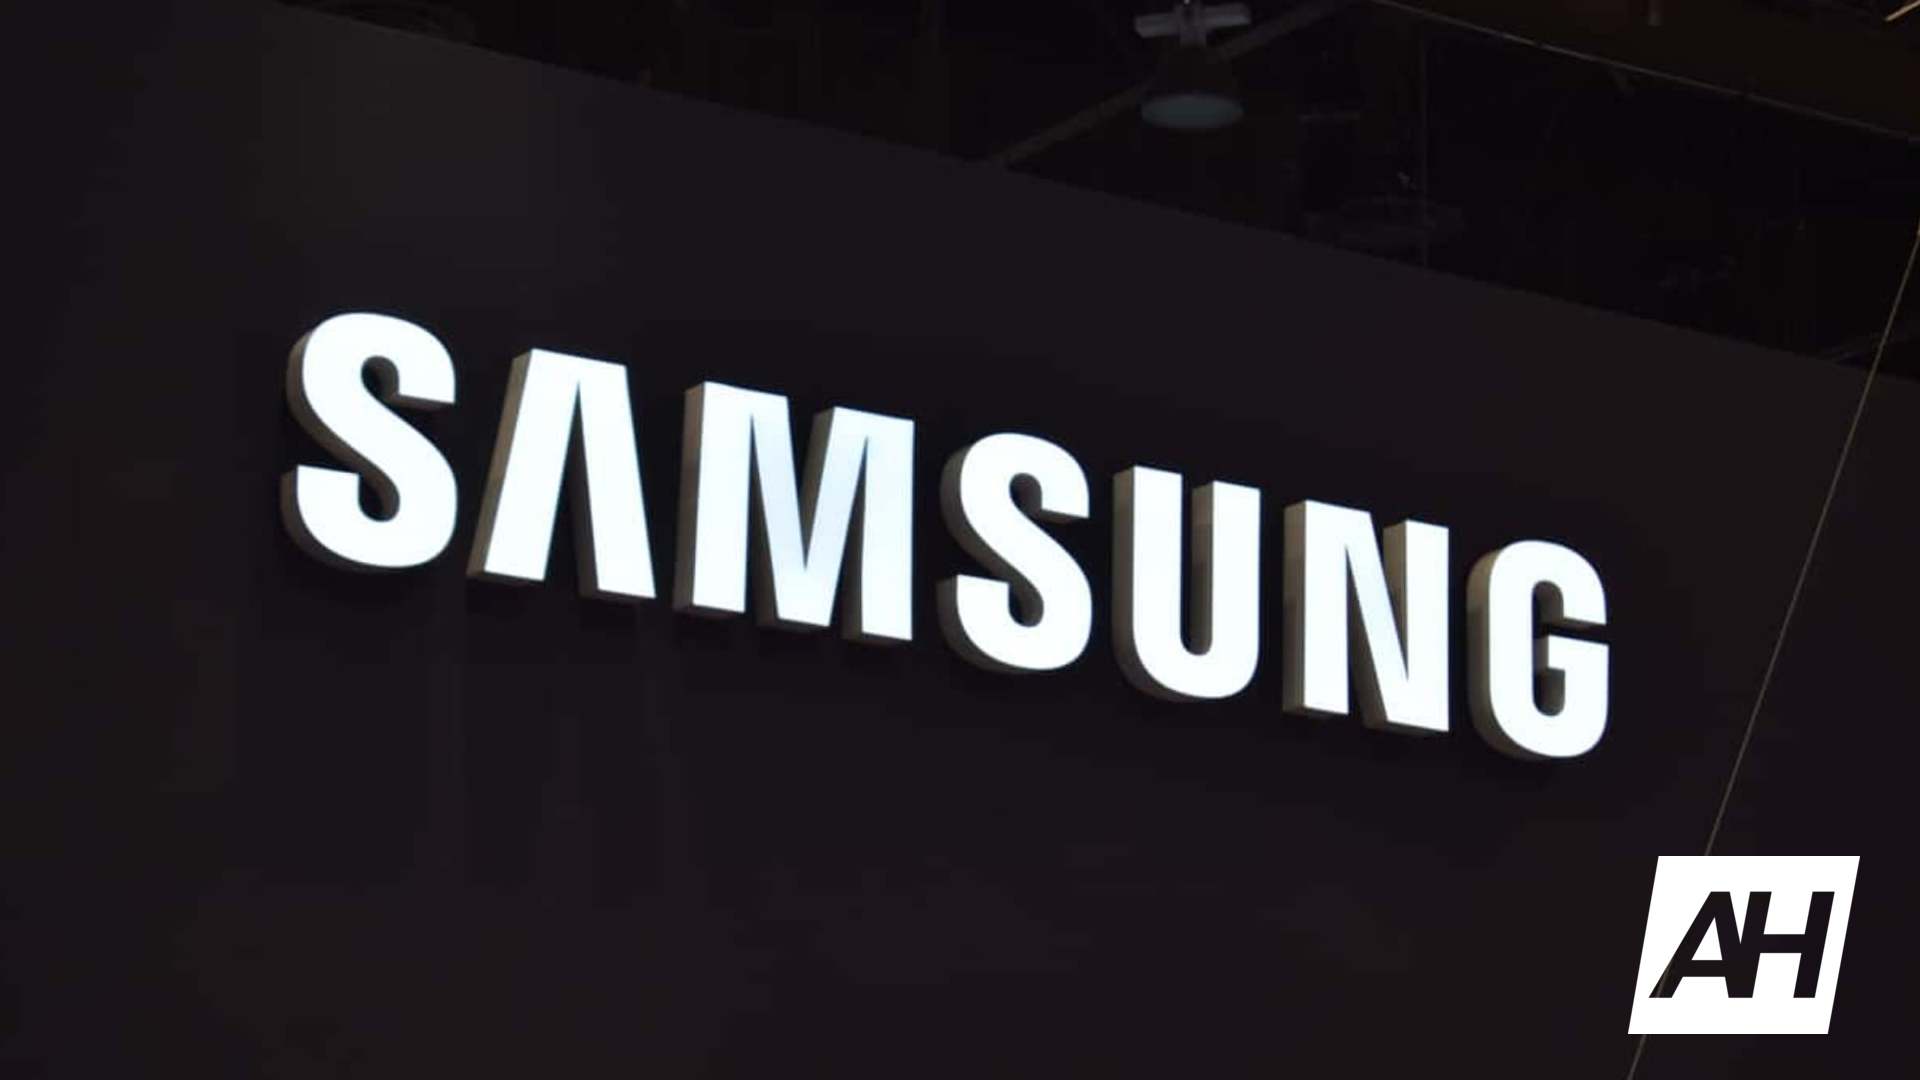 Samsung 2018 Logo - Samsung-Logo-2018-AM-AH-1-NEW-AH.jpg - Canadanewsmedia